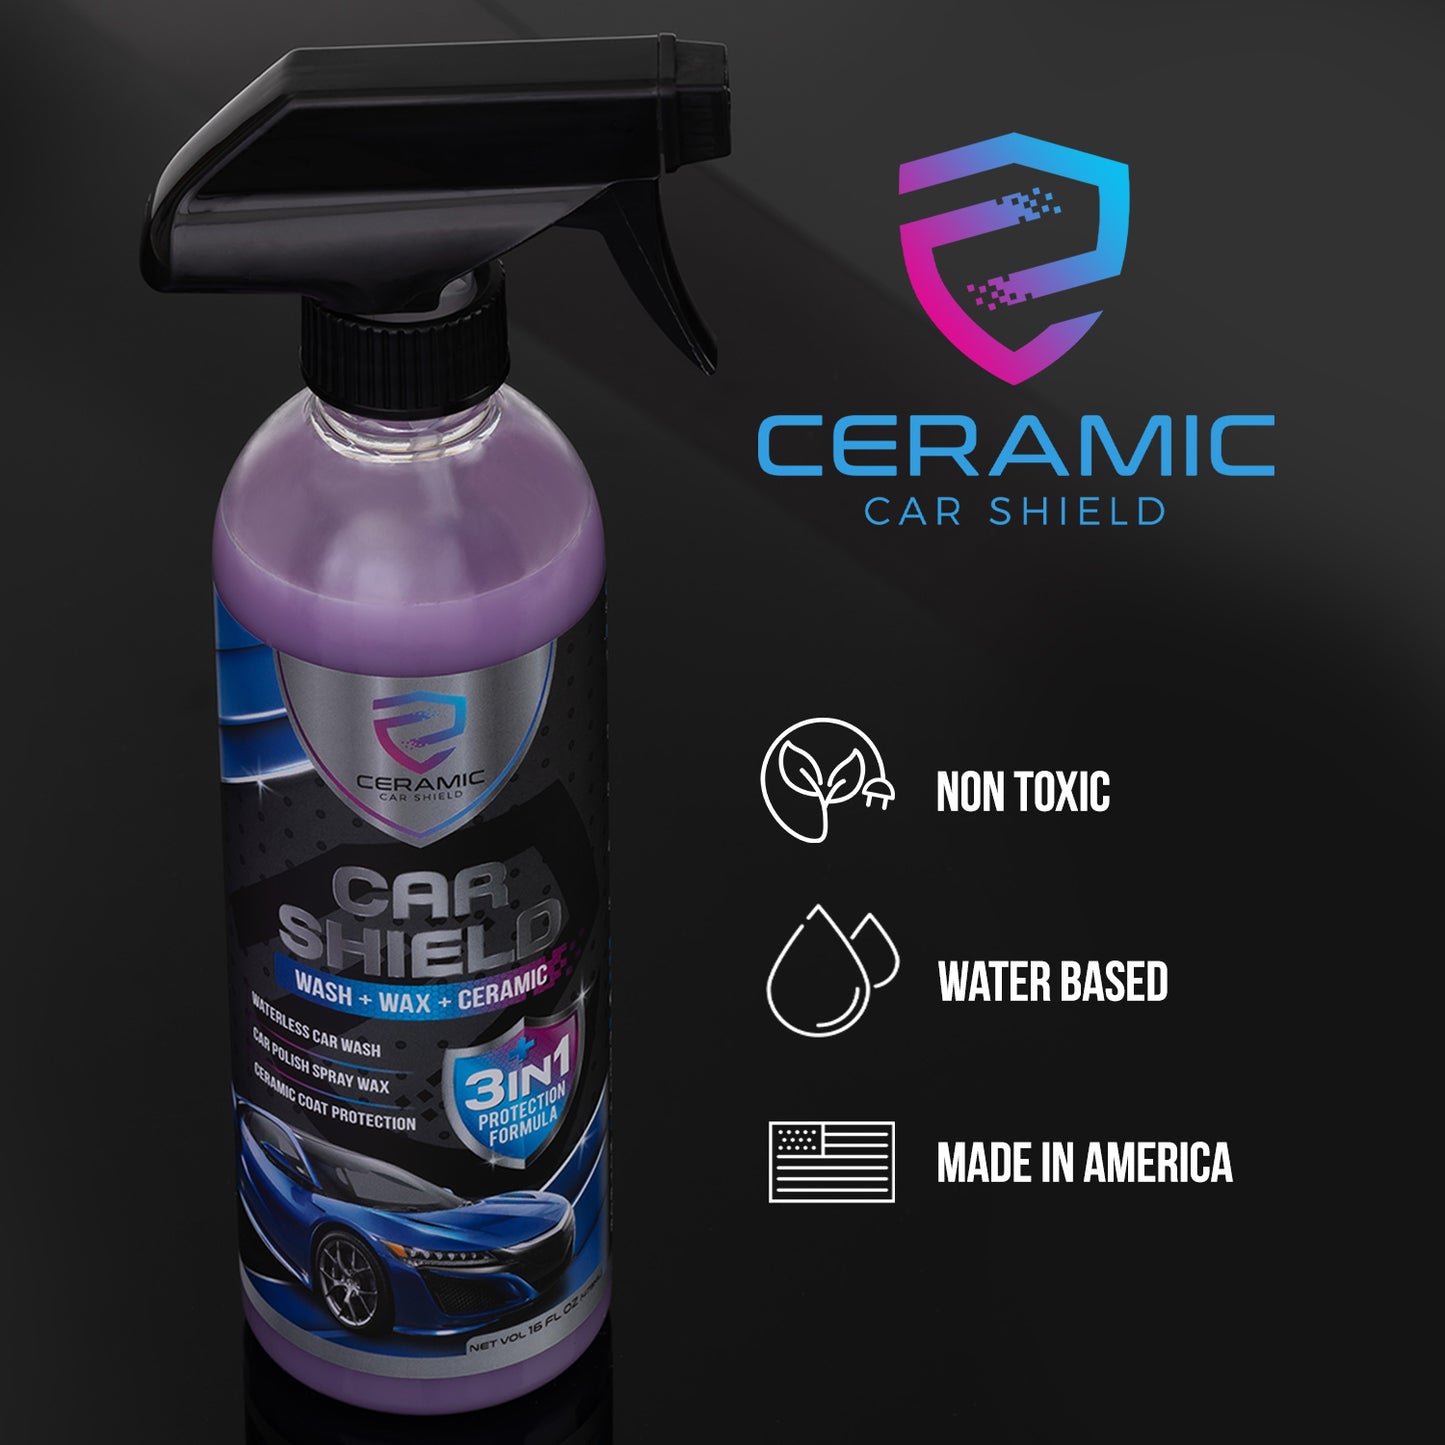 Ceramic Spray Ceramic Coating Top Coat For Cars - Easy To Apply